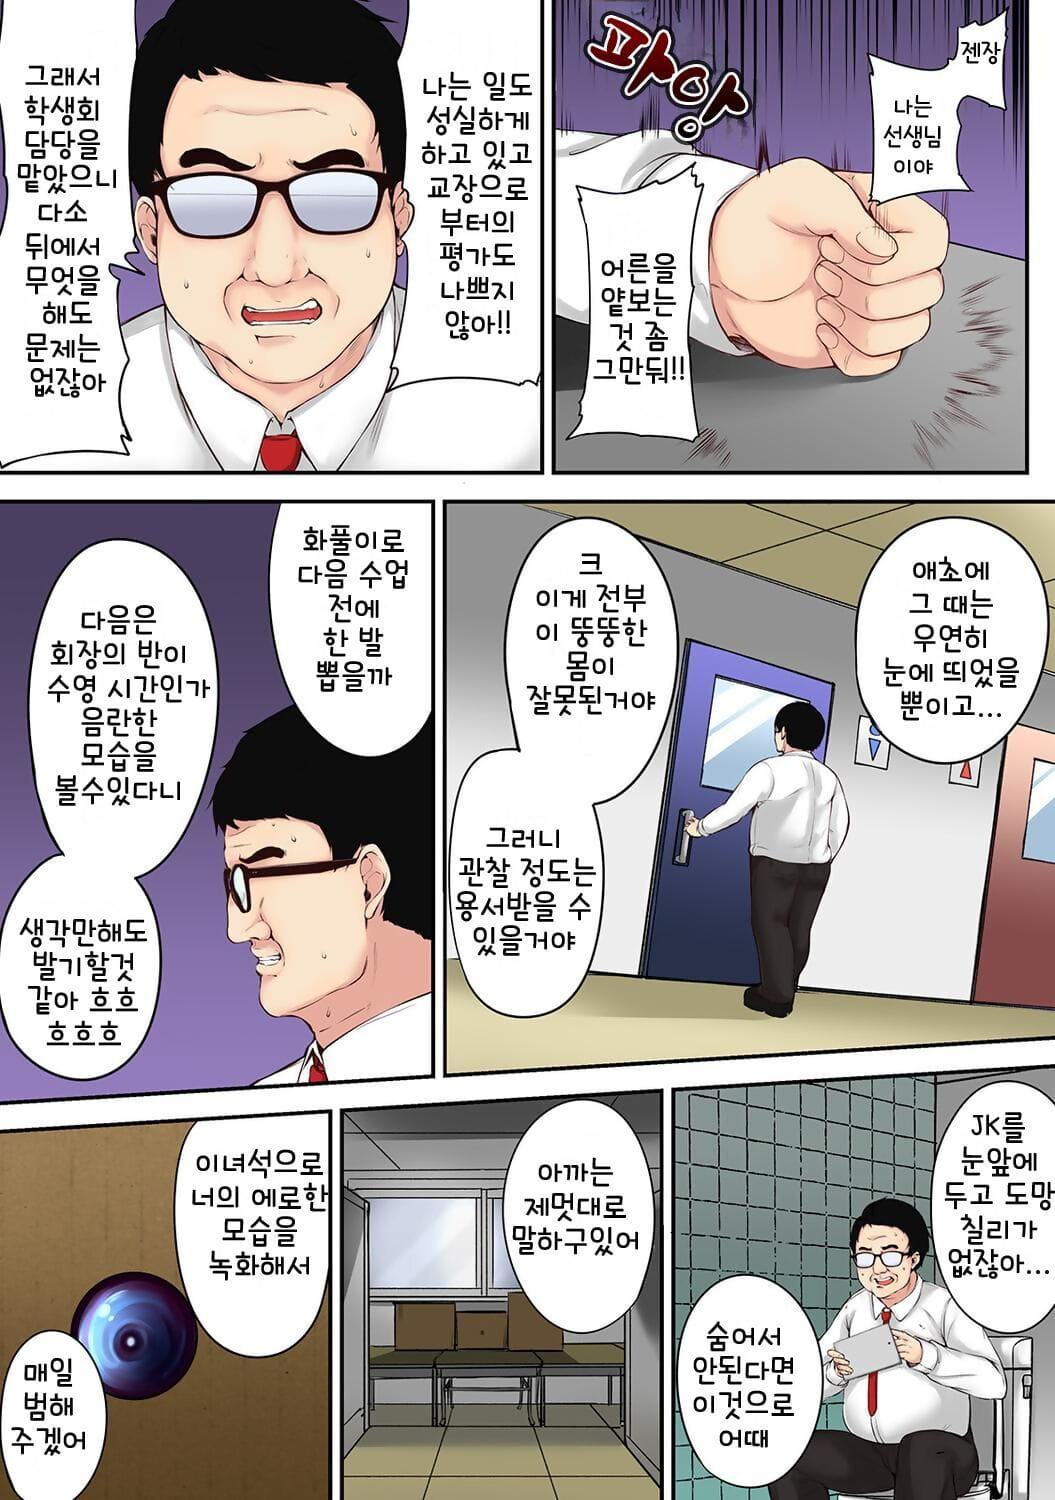 雪崎 米亚莱 saimin! choukyou 点菜 shidou ~nerawareta seitokaichou~ ch. 1 漫画 ananga 朗高 vol. 48 韩国